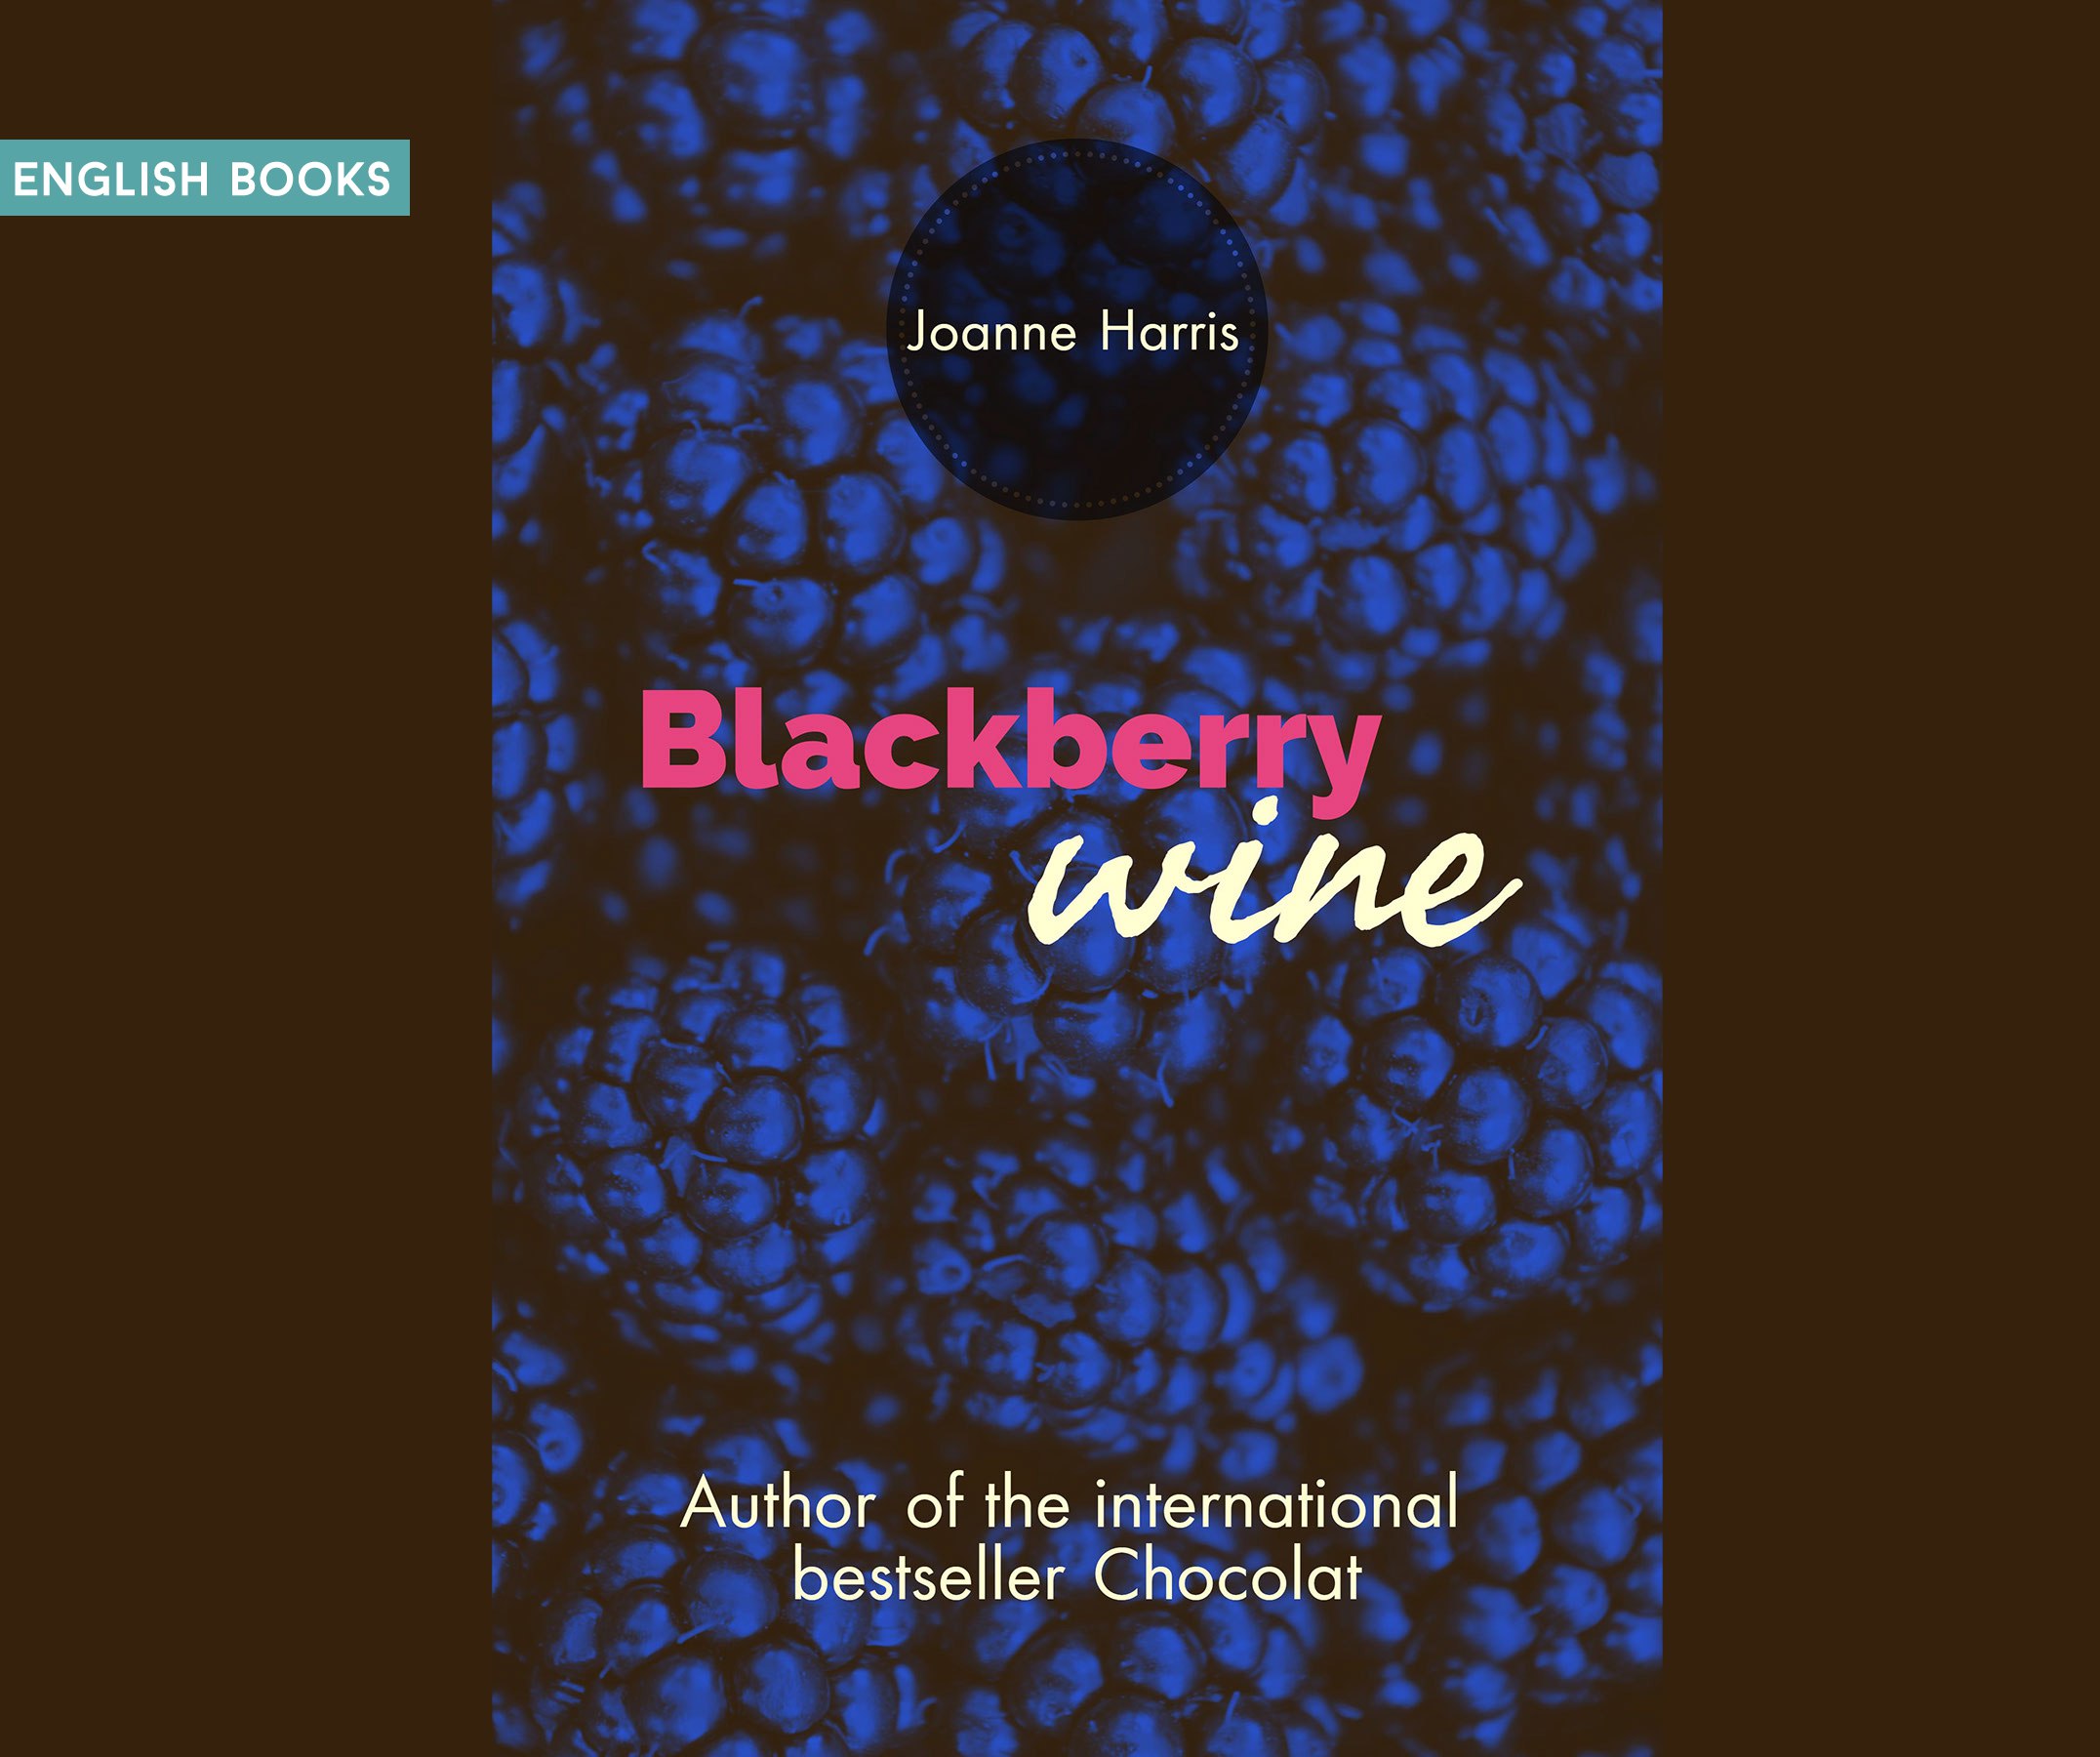 Joanne Harris — Blackberry Wine